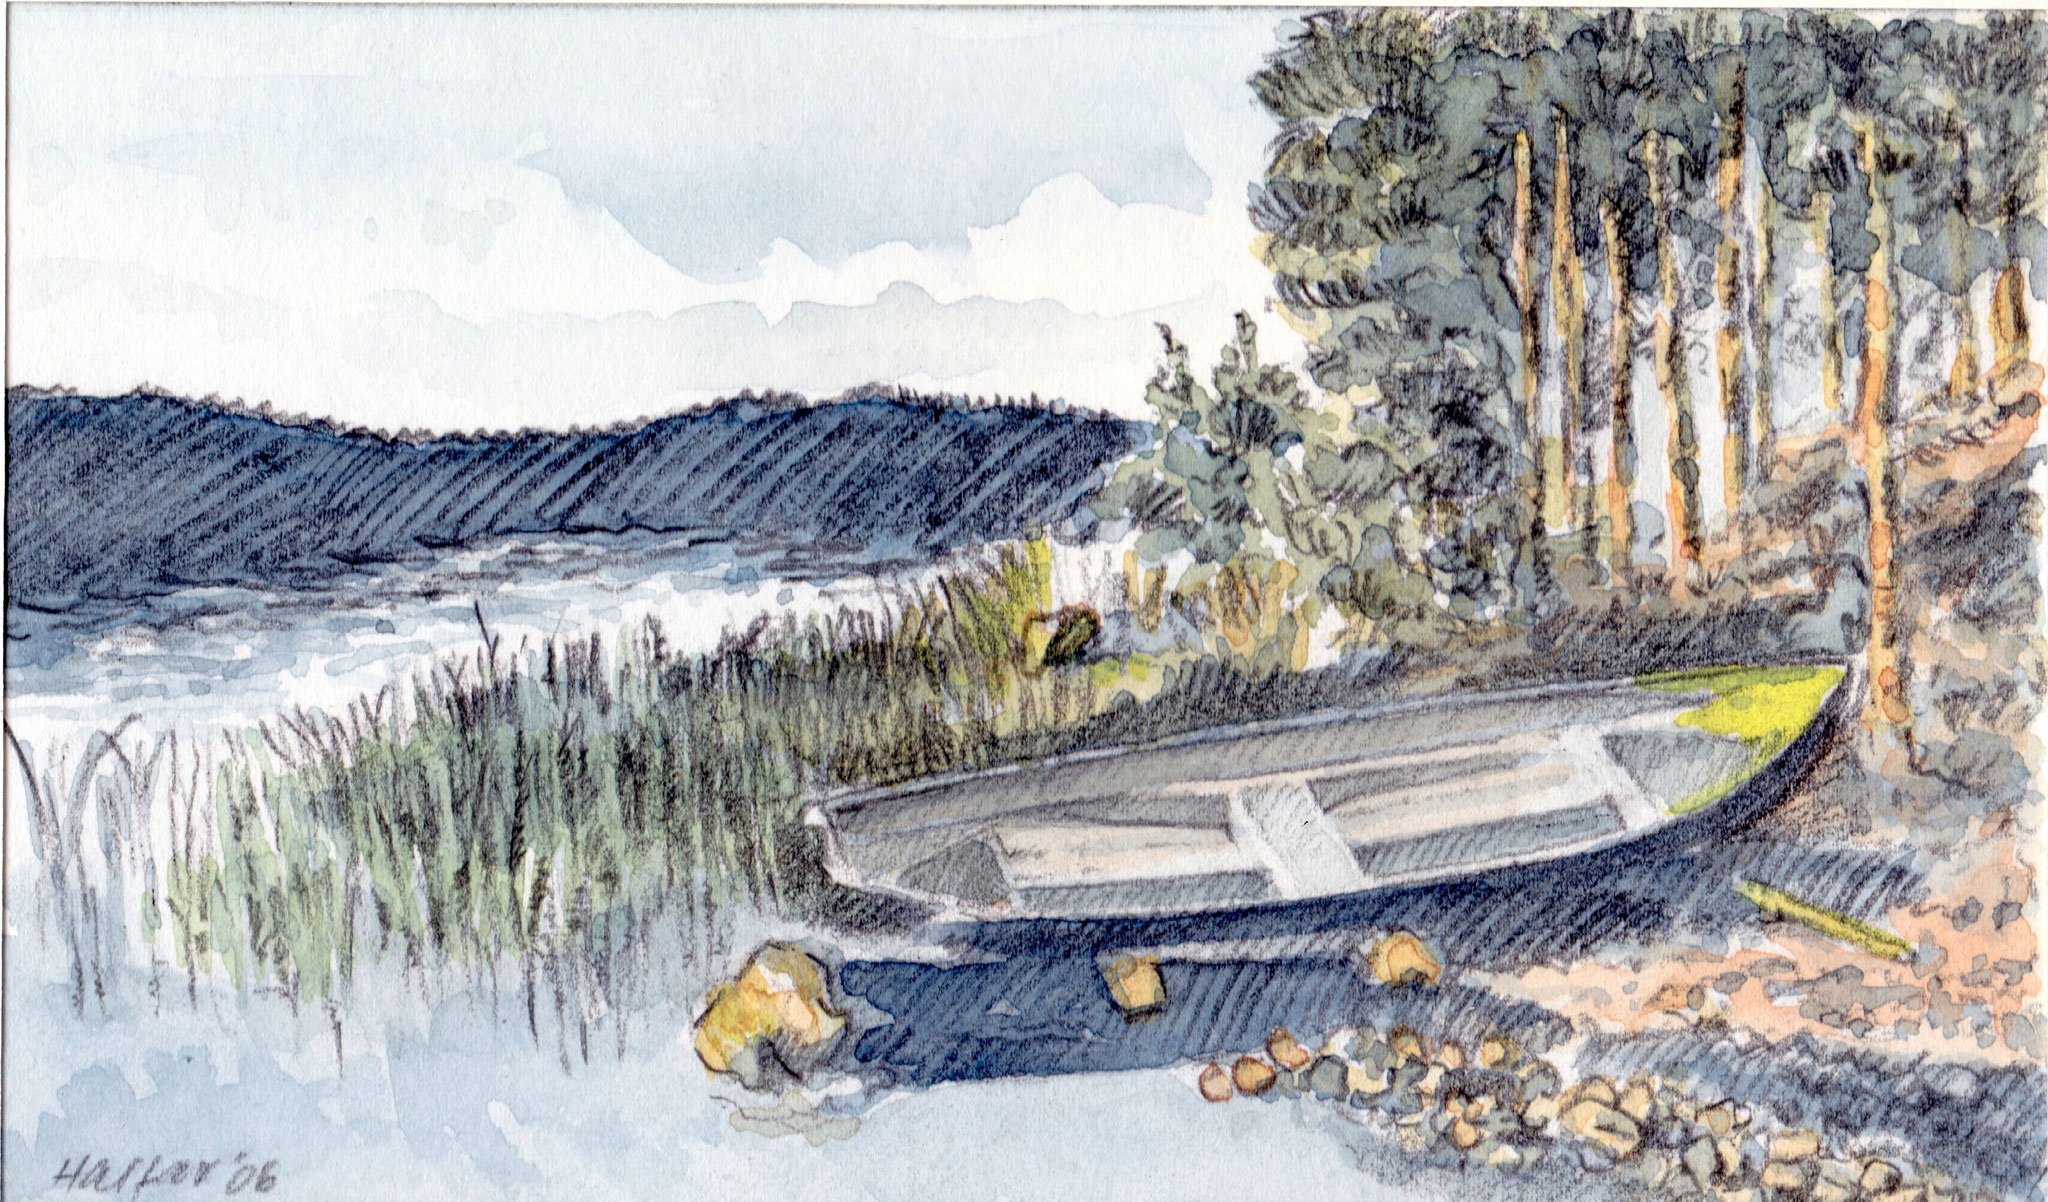 ' Saimaa Seen' Finnland, Aquarell/Pittstift, 15 x 20 cm, 2006, verkauft